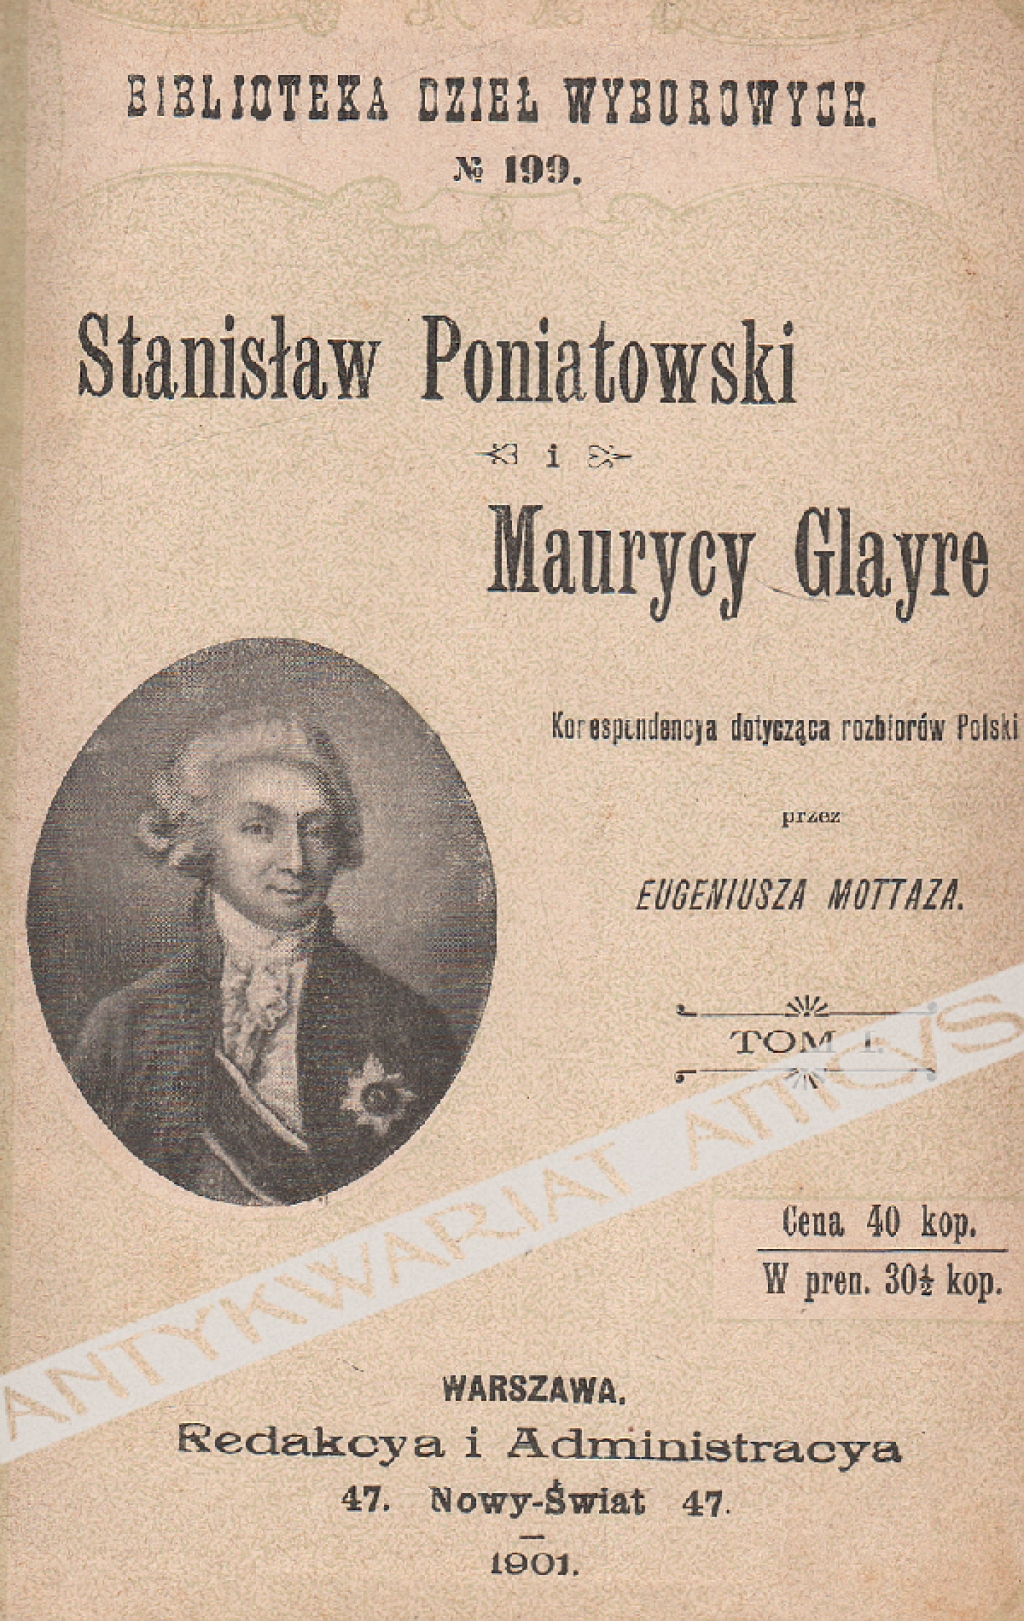 Stanisław Poniatowski i Maurycy Glayre. Korespondencya dotycząca rozbiorów Polski wydana przez Eugeniusza Mottaza, t. I-II